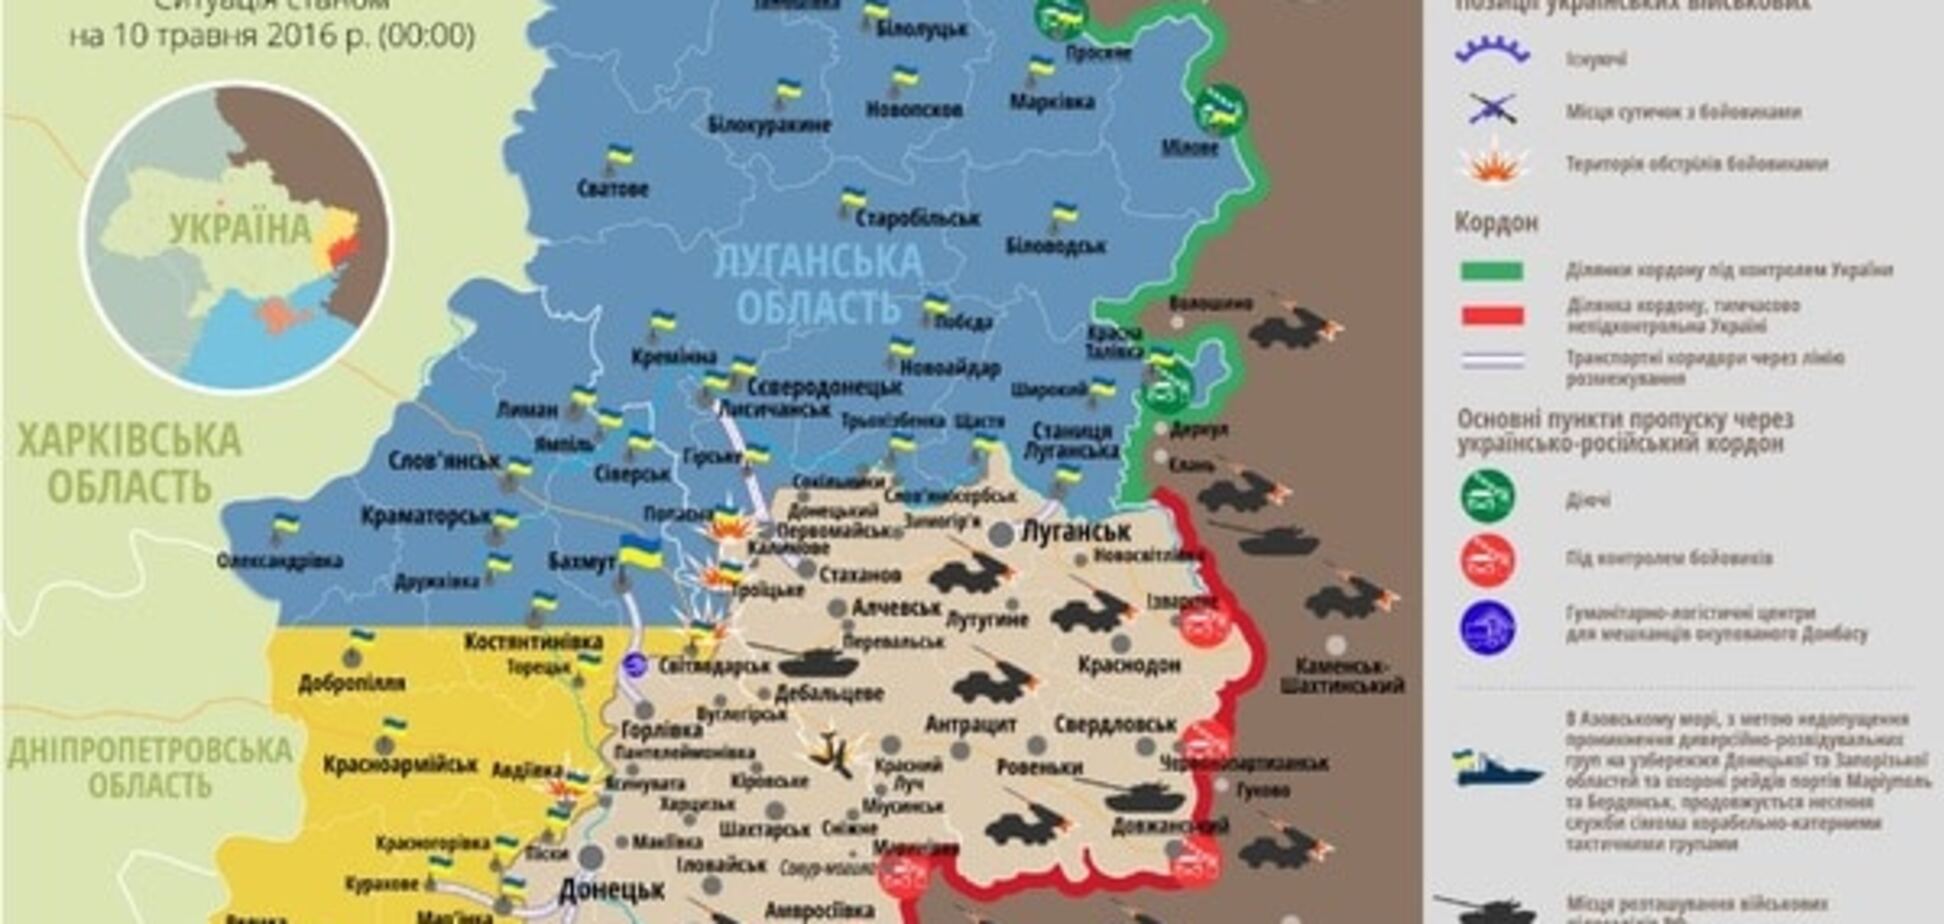 Сили АТО зазнали втрат на Донбасі: опублікована карта - 10 травня 2016